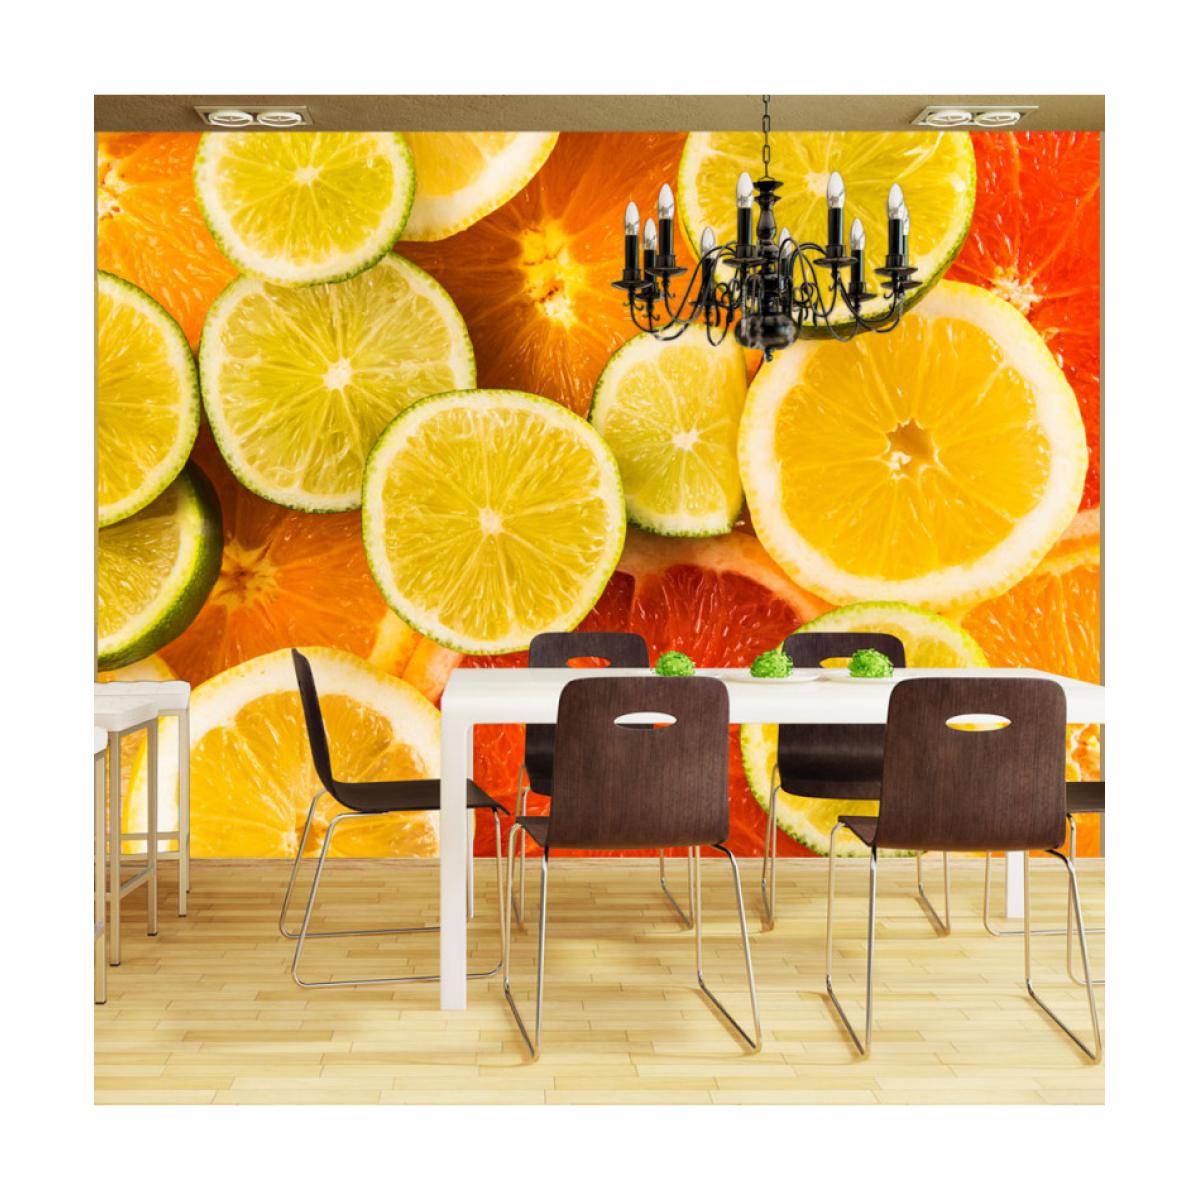 Artgeist - Papier peint - Citrus fruits 300x231 - Papier peint